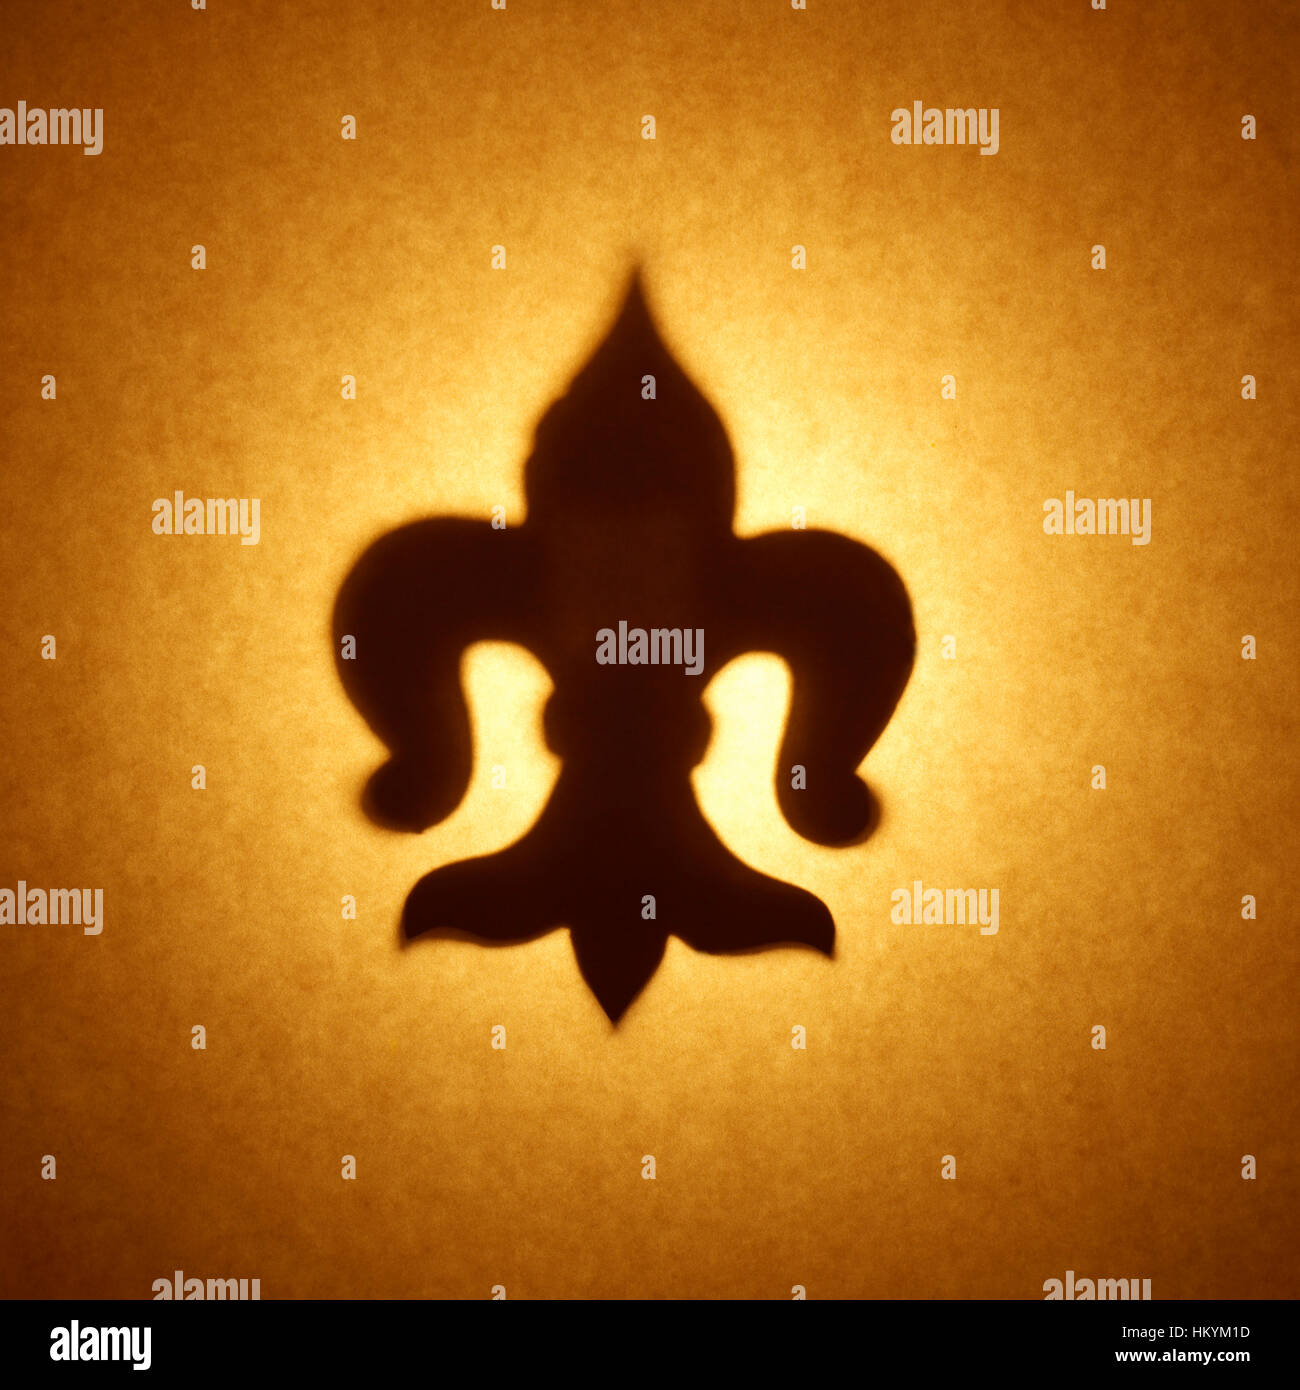 Silhouette en contre-jour de fleur-de-lis shape cut out contre ton brun,  papier avec spot mettez en surbrillance Photo Stock - Alamy